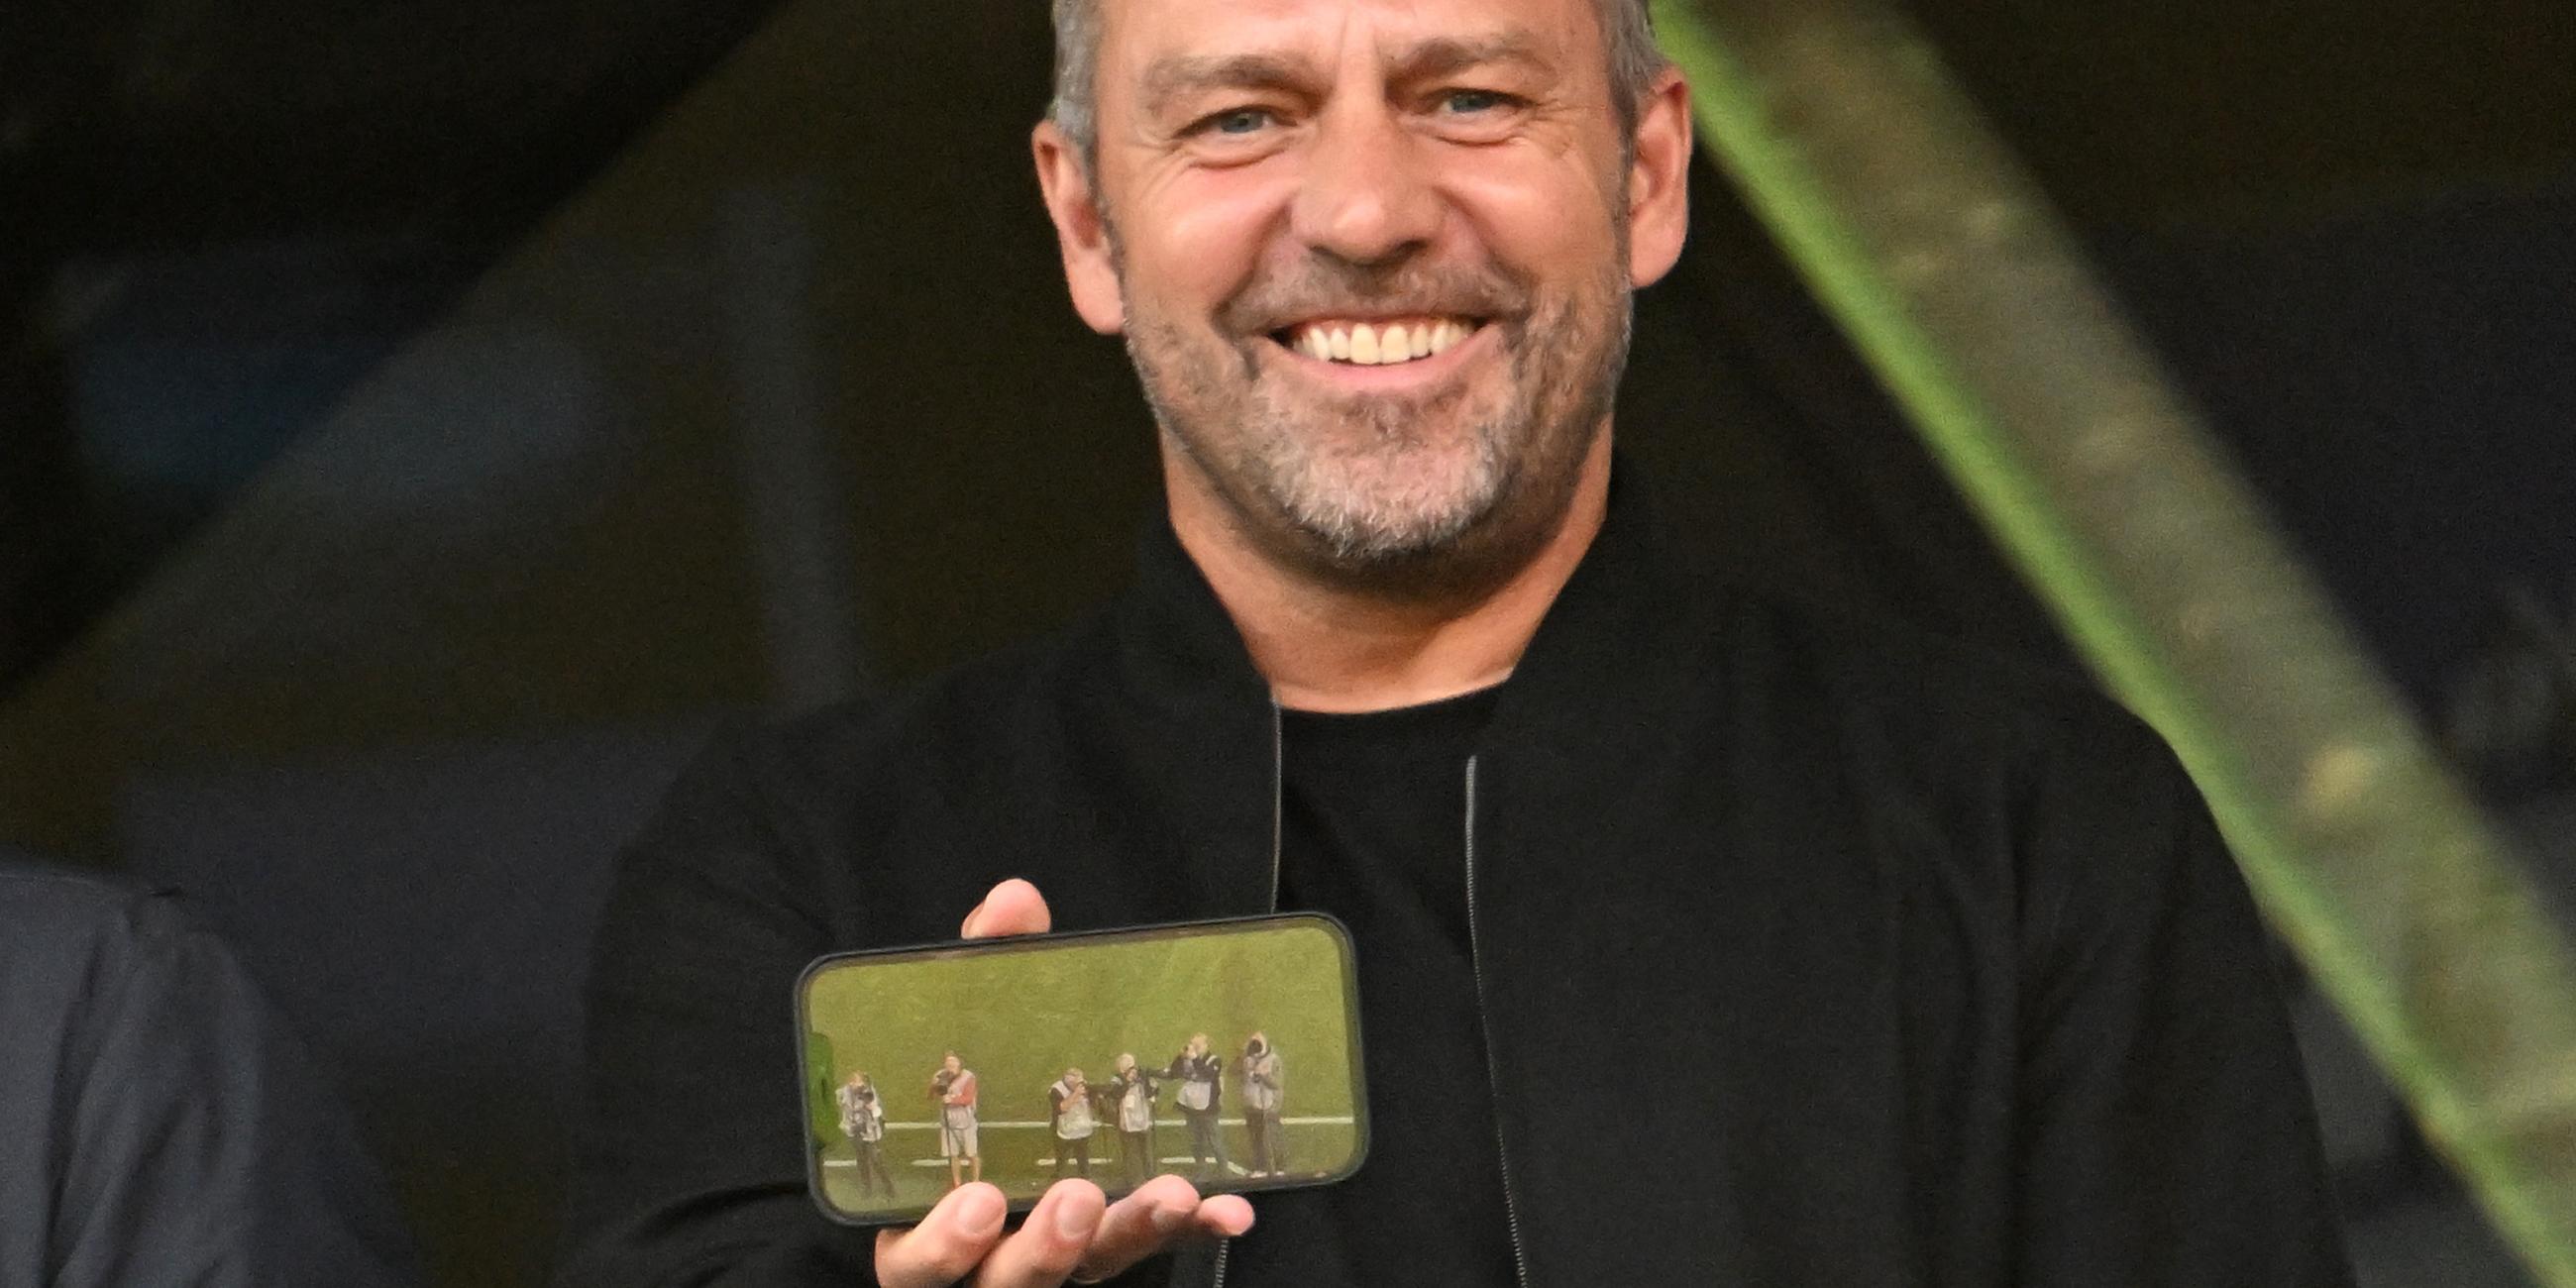 Fußball-Bundesliga, Bayer Leverkusen - VfL Wolfsburg: Bundestrainer Hansi Flick sitzt auf der Tribüne und zeigt den Fotografen ein Bild auf seinem Smartphone.